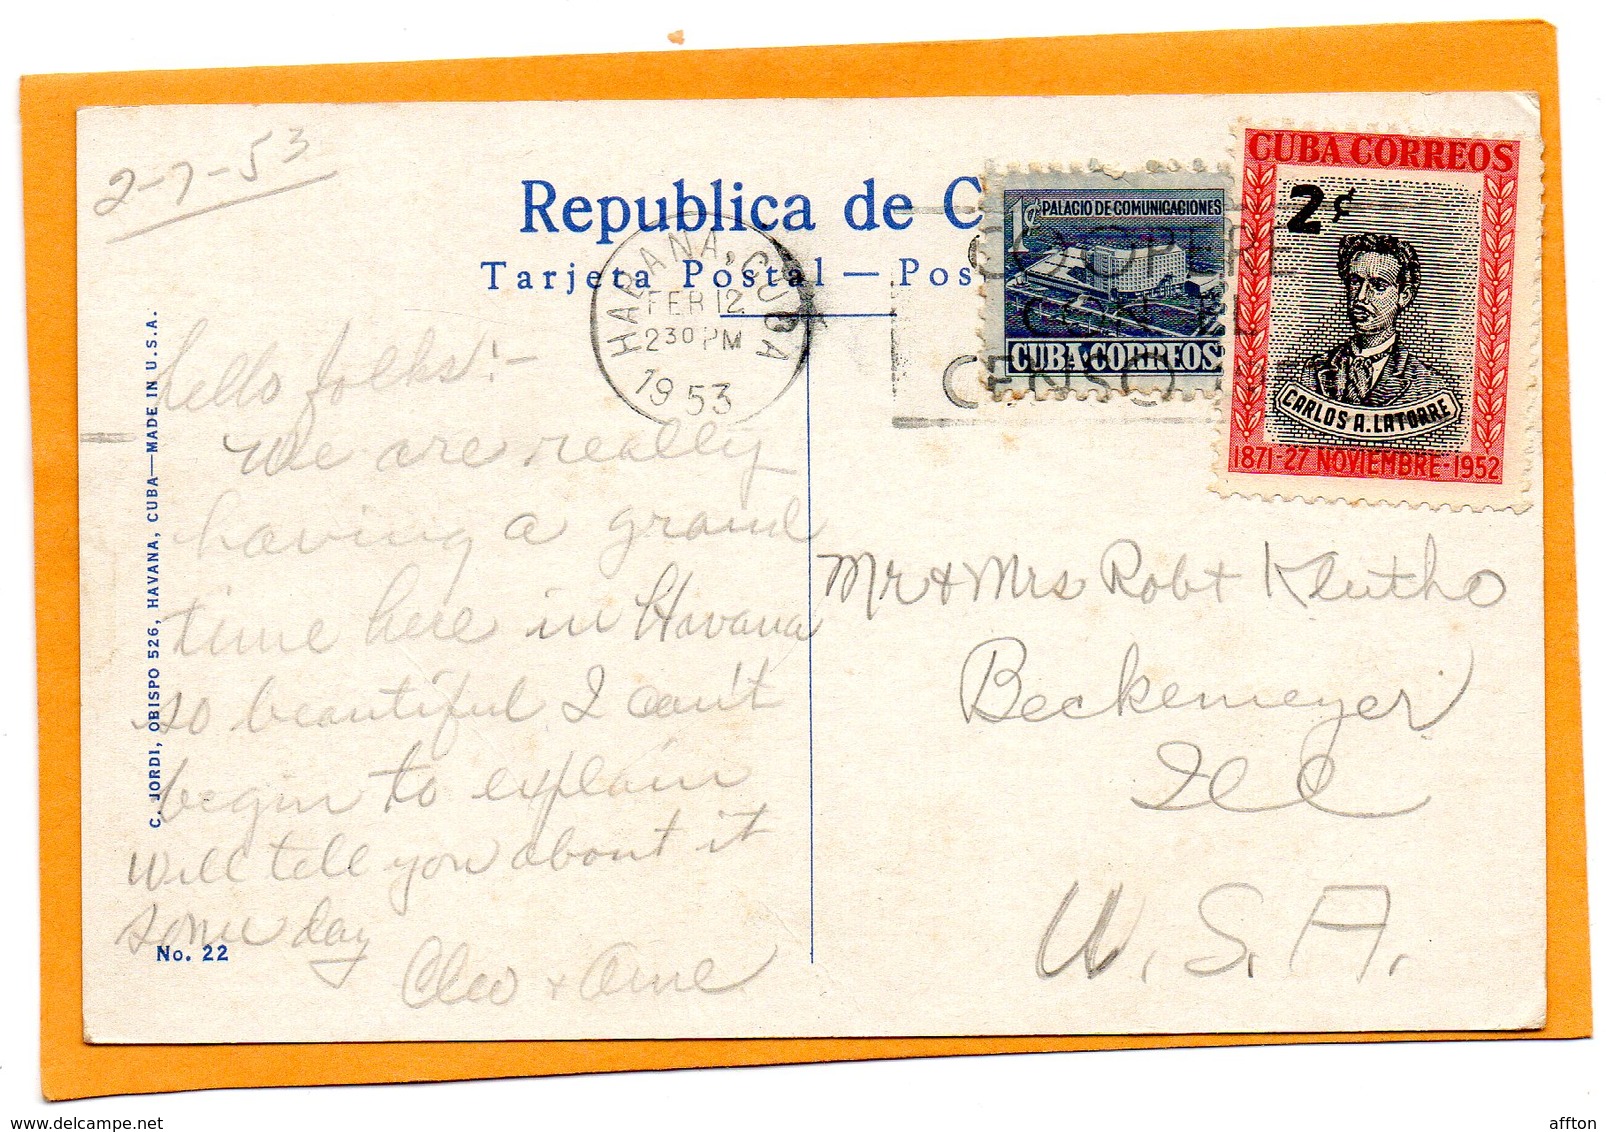 Havana Cuba 1953 Postcard Mailed - Cuba